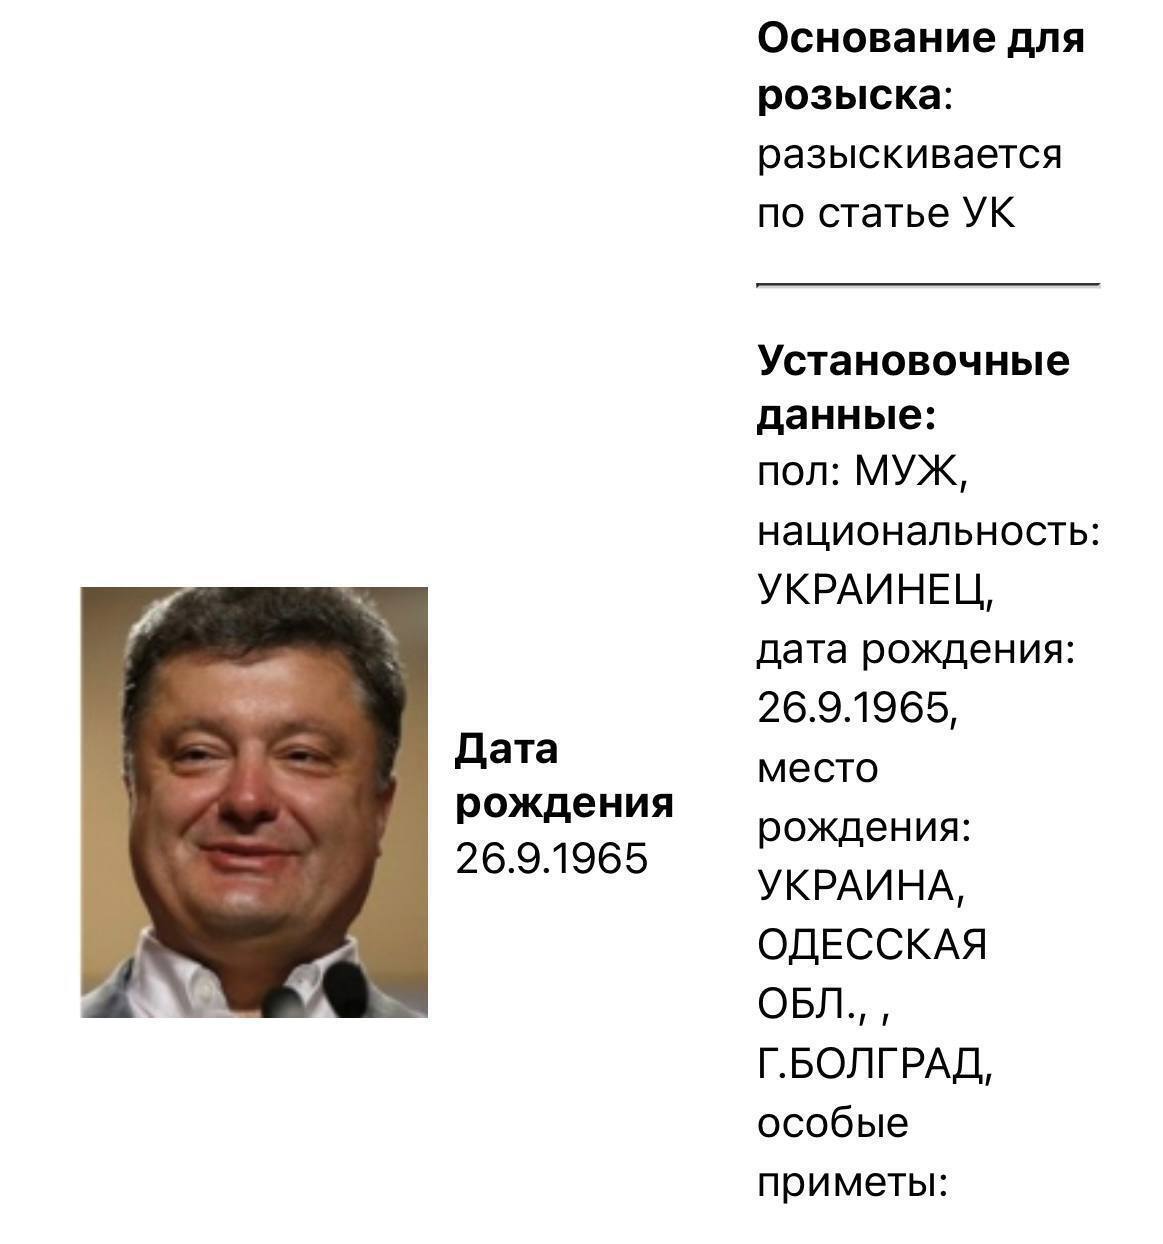 Зеленского и Порошенко внезапно убрали из базы розыска в РФ: что известно